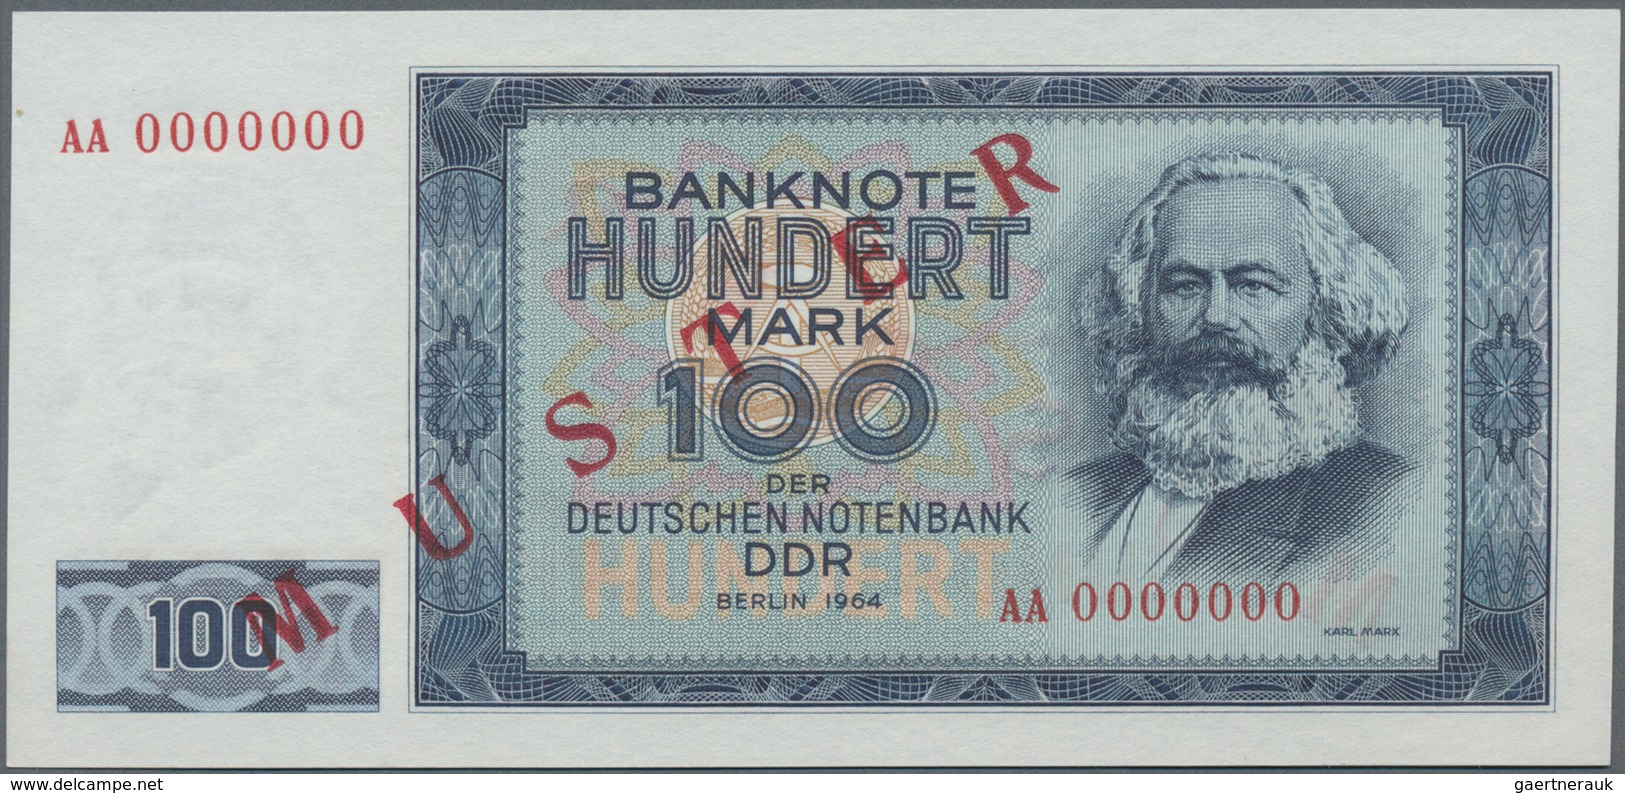 Deutschland - DDR: Komplettes Lindner-Vordruckalbum mit 52 Banknoten, dabei die Serien der Alliierte